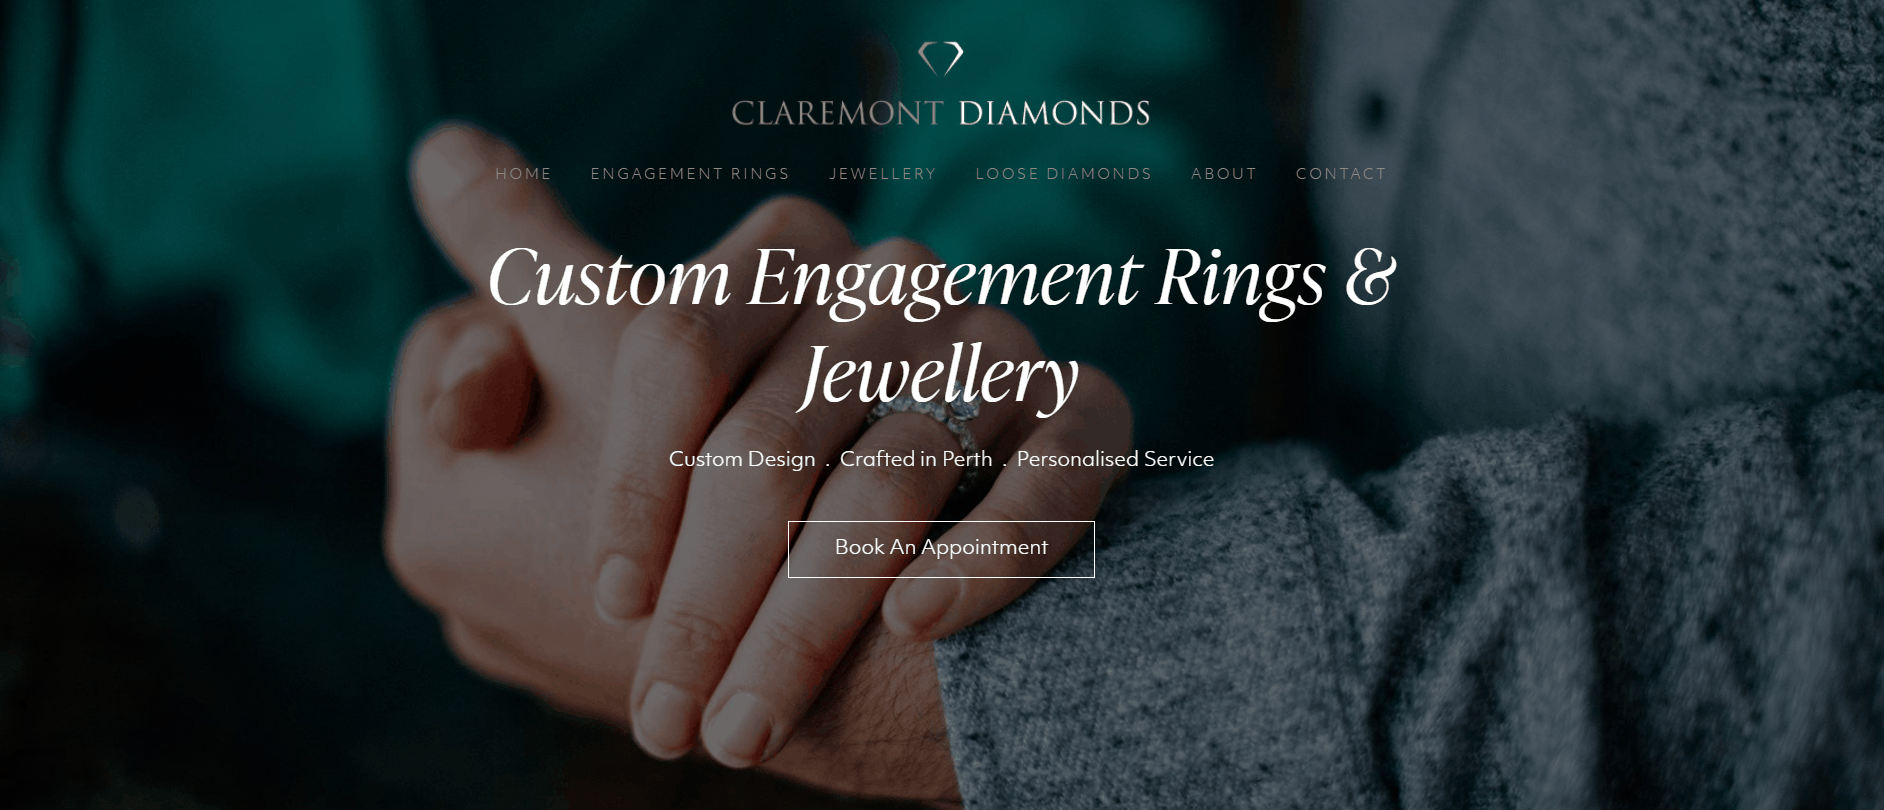 Claremont Diamonds